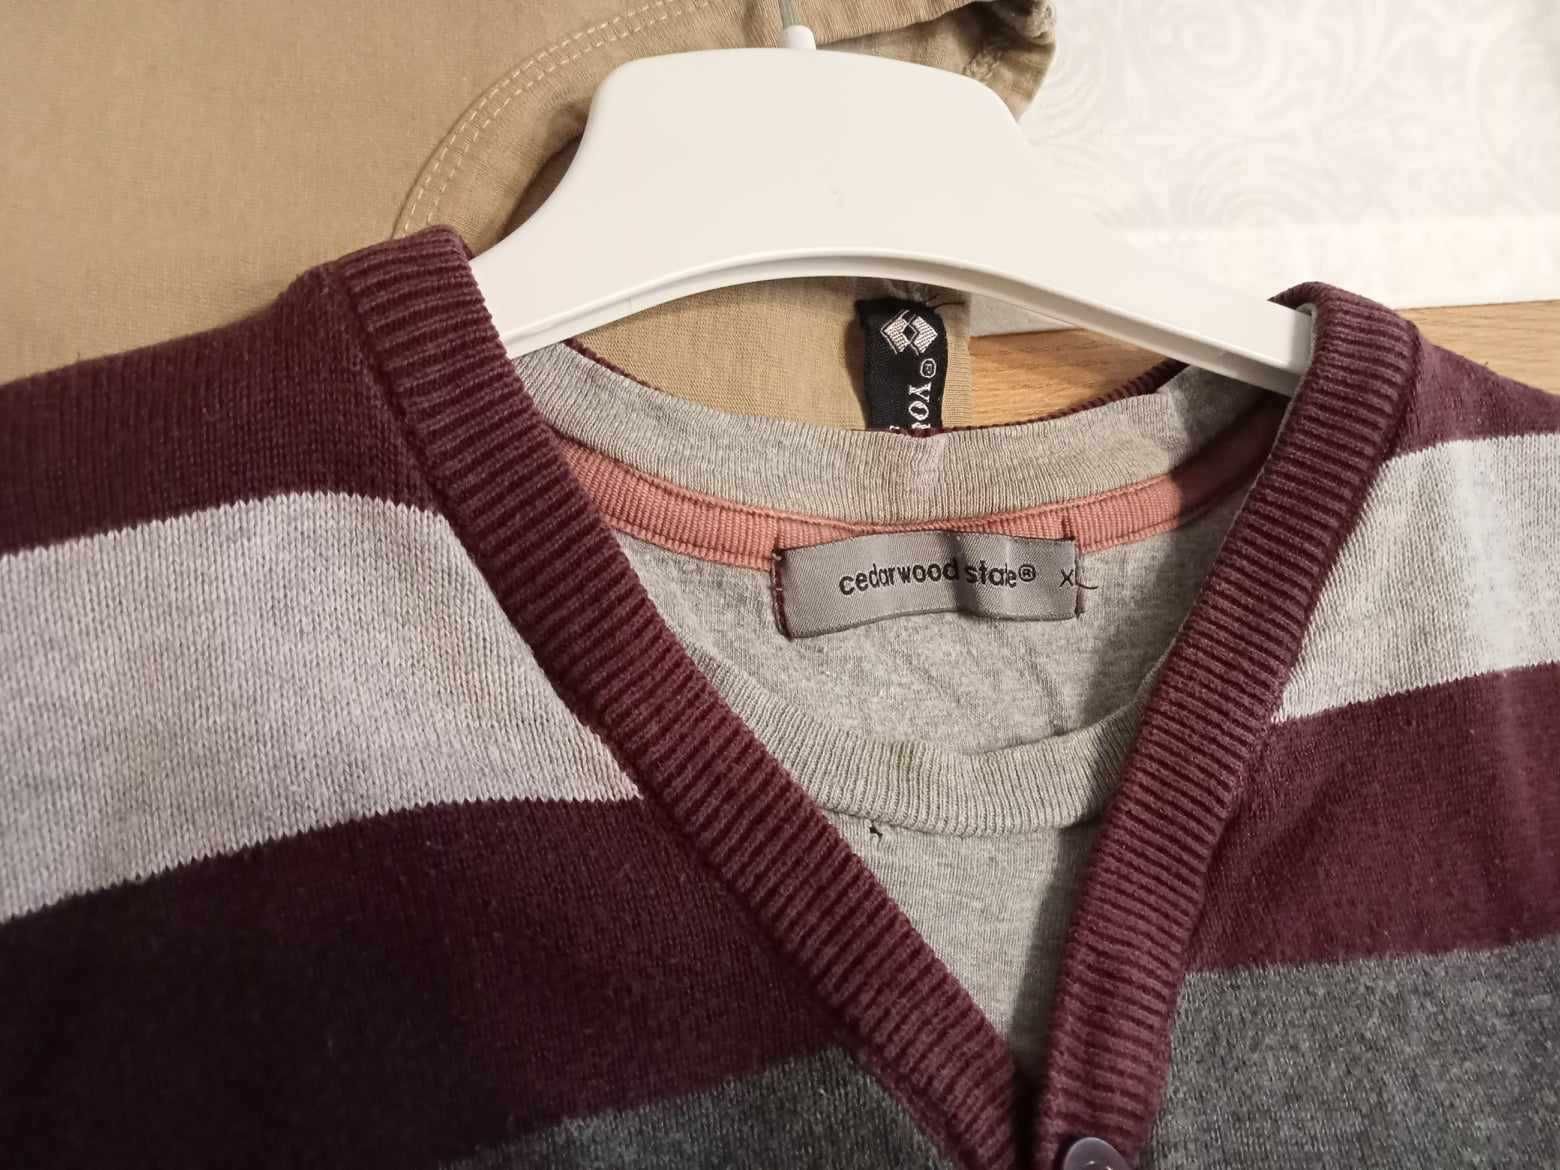 Sweter męski w pasy cedarwood state, rozmiar XL